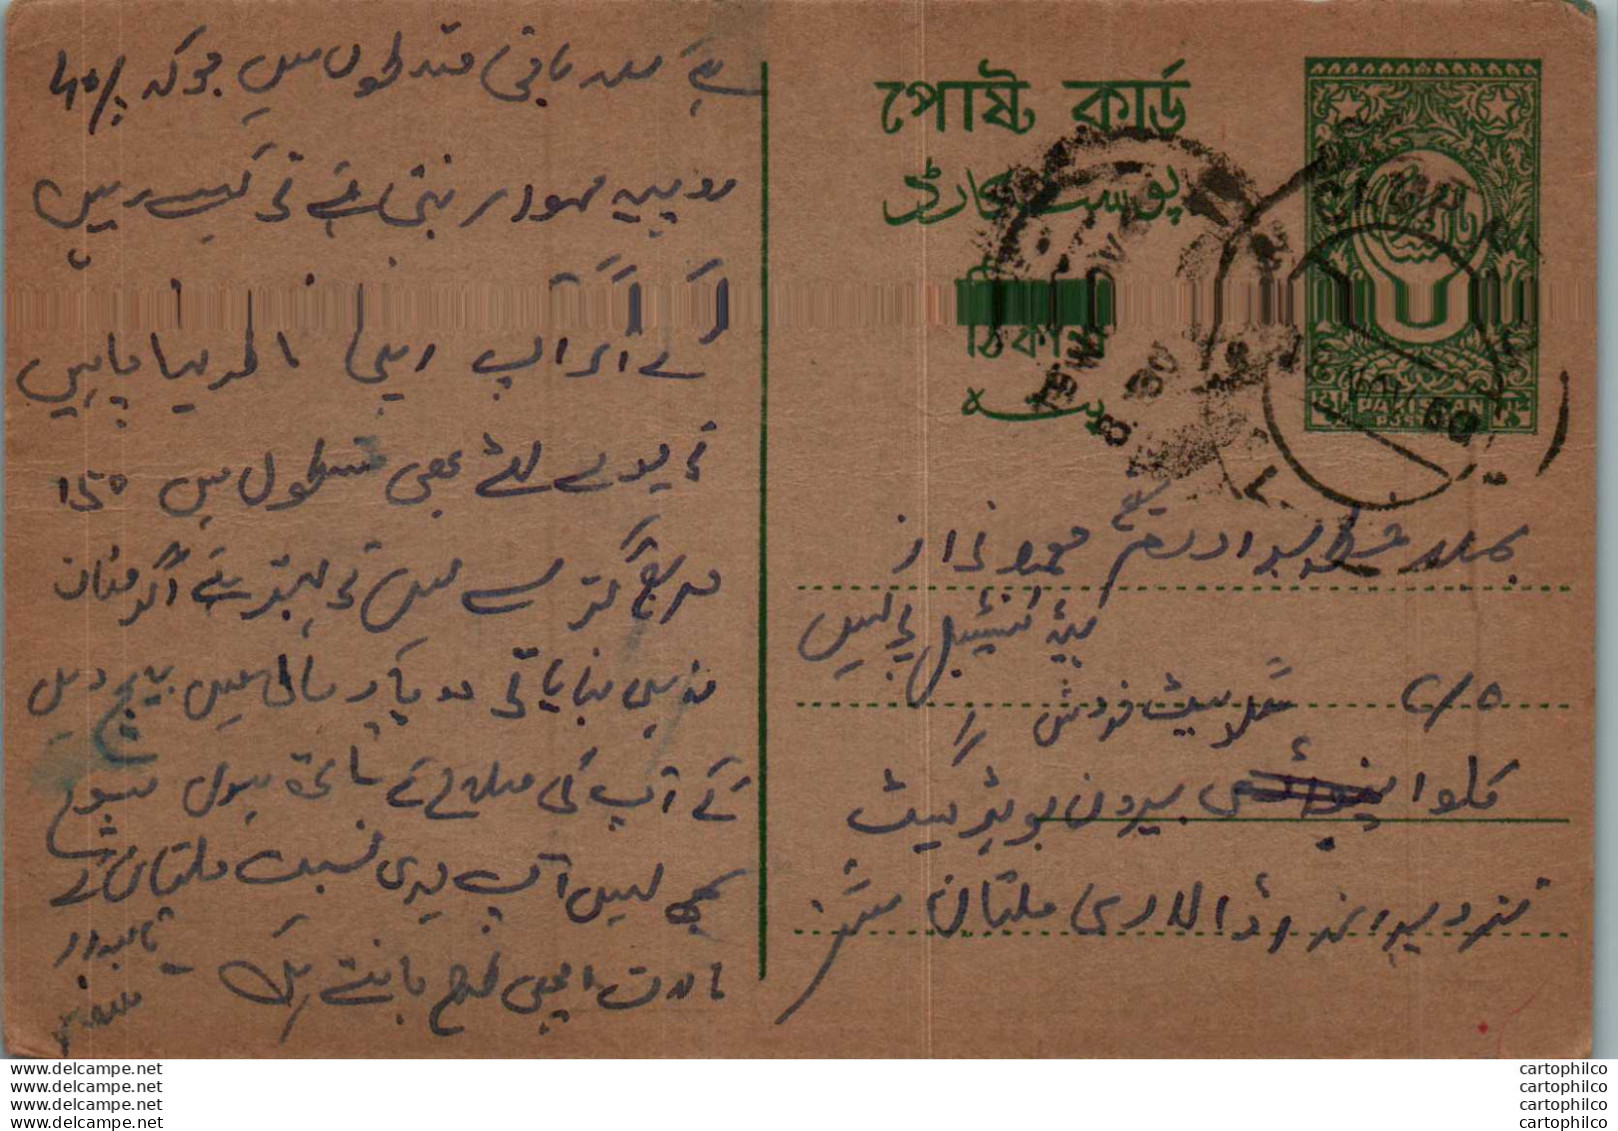 Pakistan Postal Stationery - Pakistán